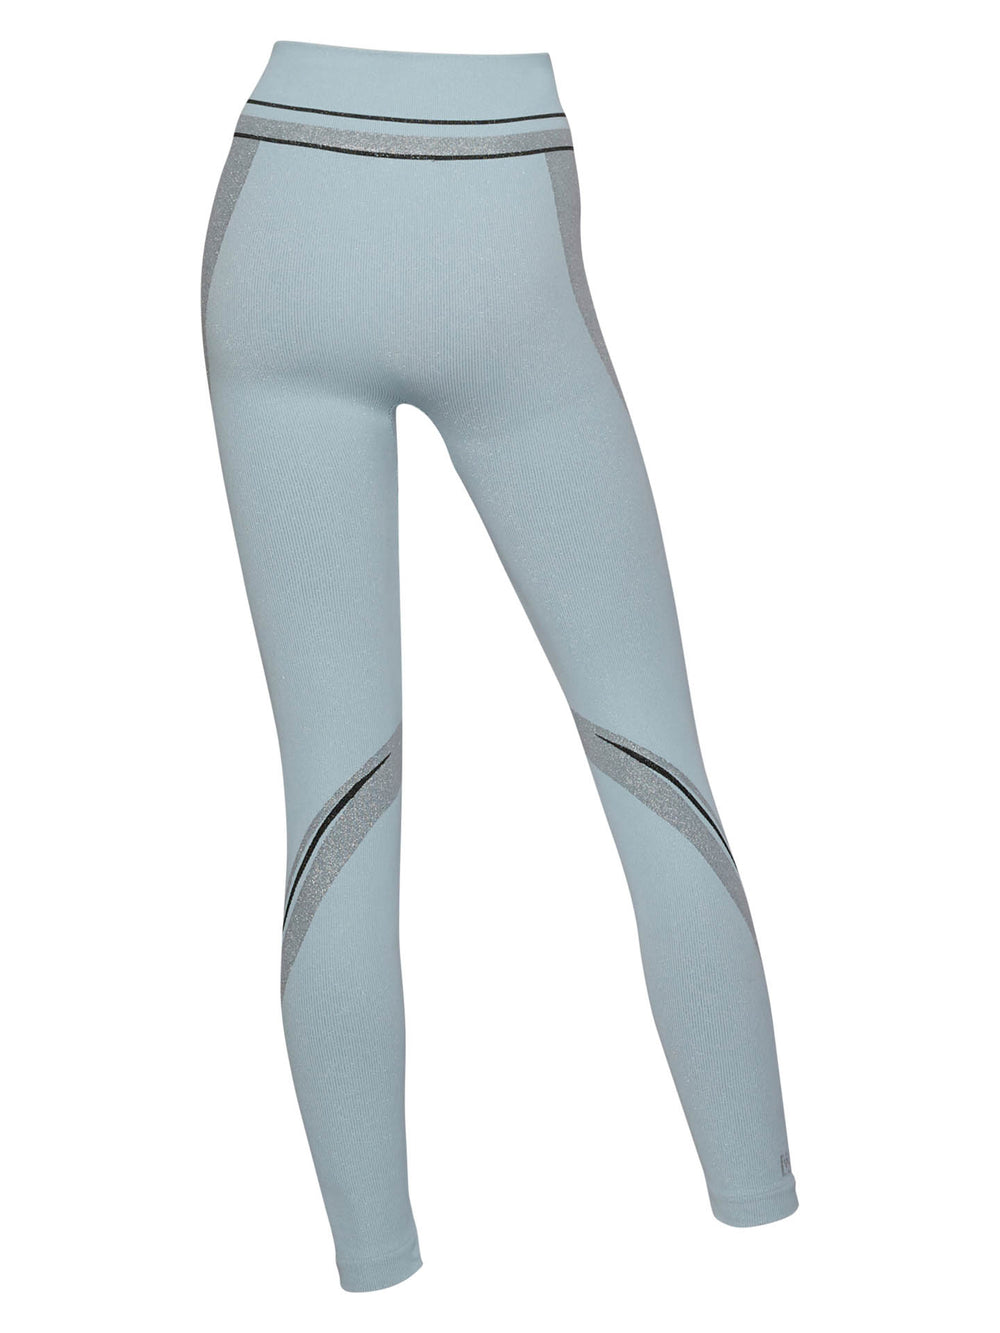 Women's High Waist, Full Length Leggings - Flawless Leggings - Aquamarine